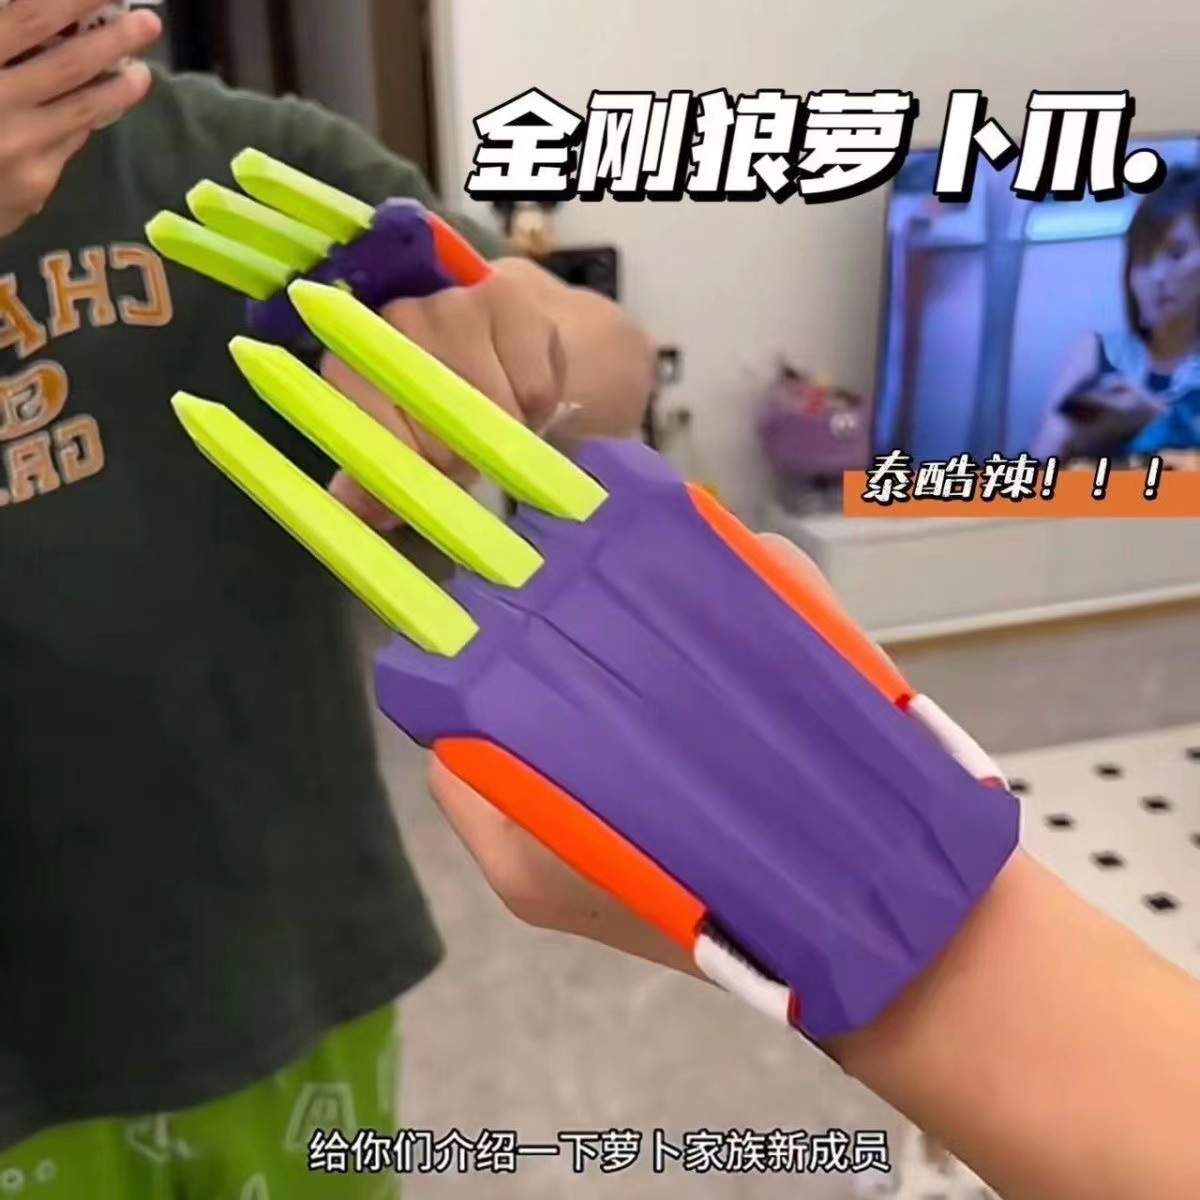 抖音网红同款3D打印金刚狼萝卜爪塑料爪子模型道具萝卜刀解压玩具